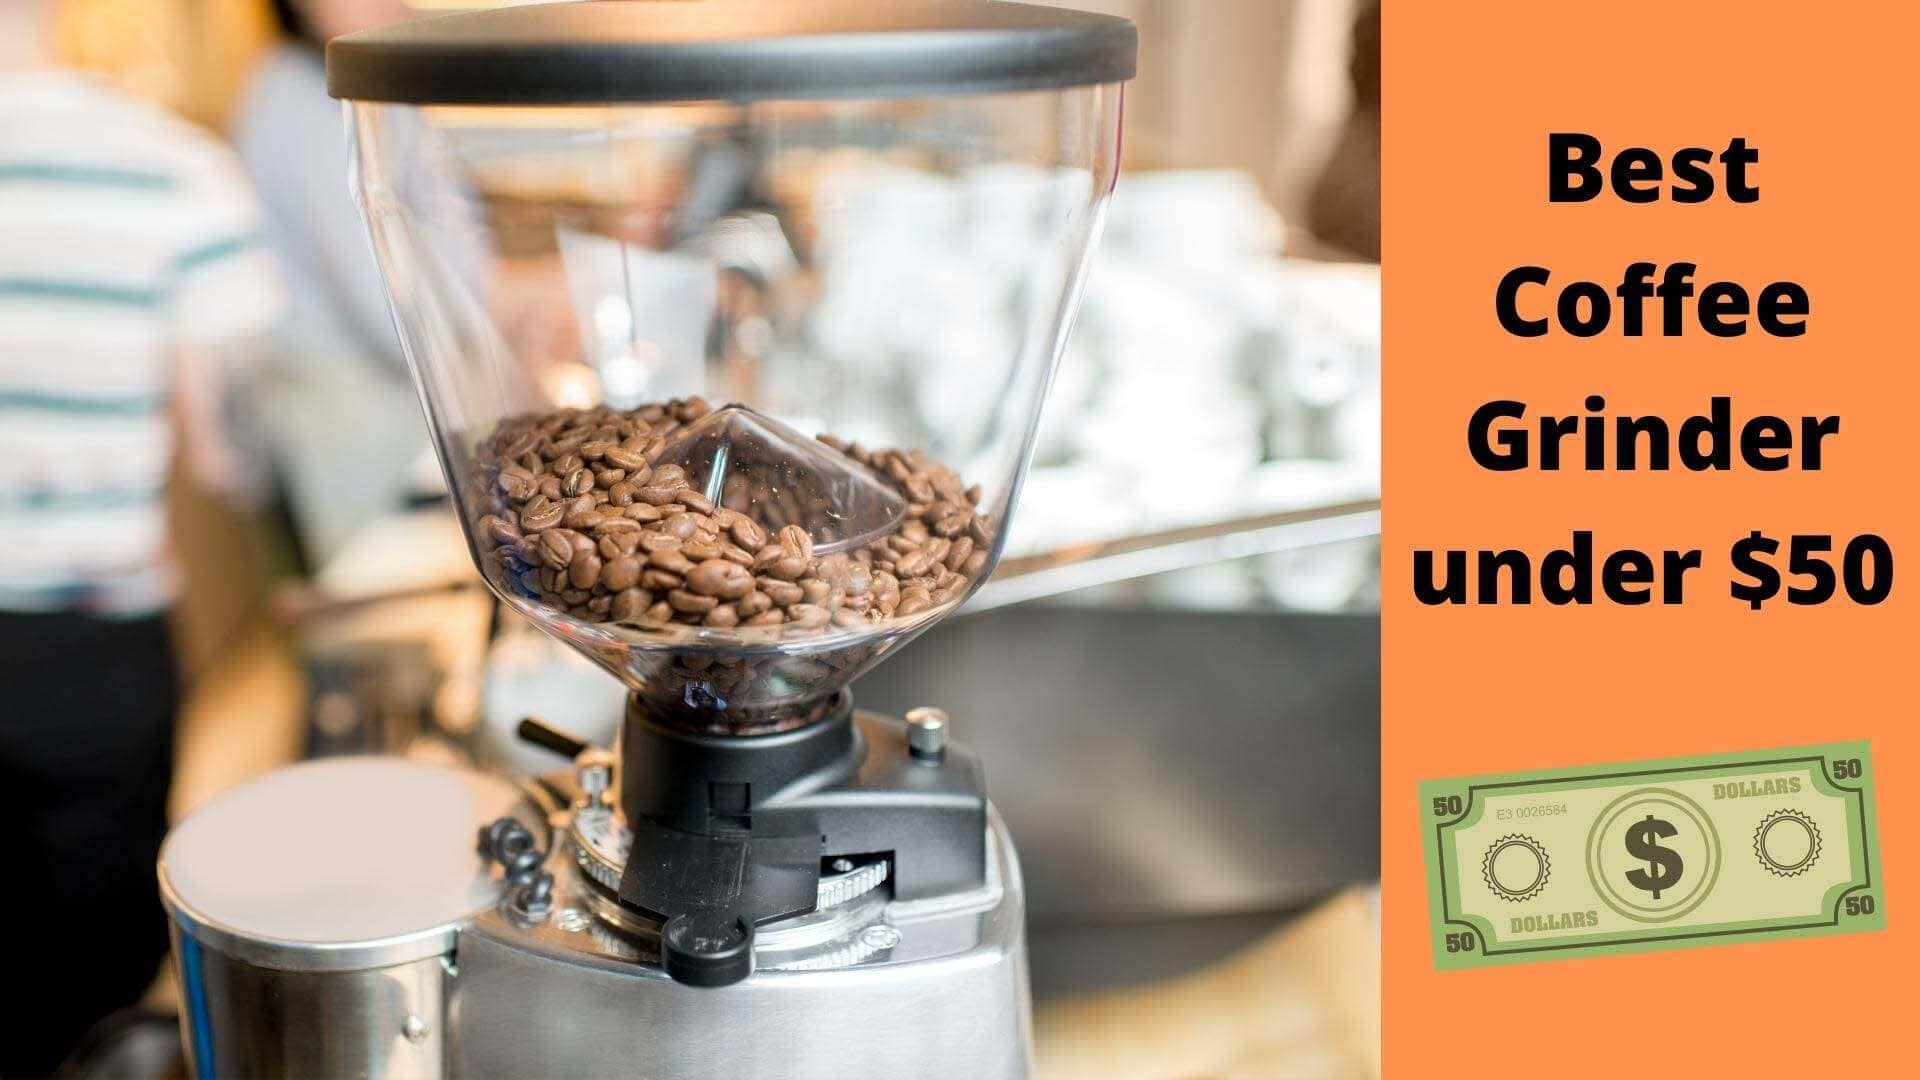 Best Coffee Grinder under $50